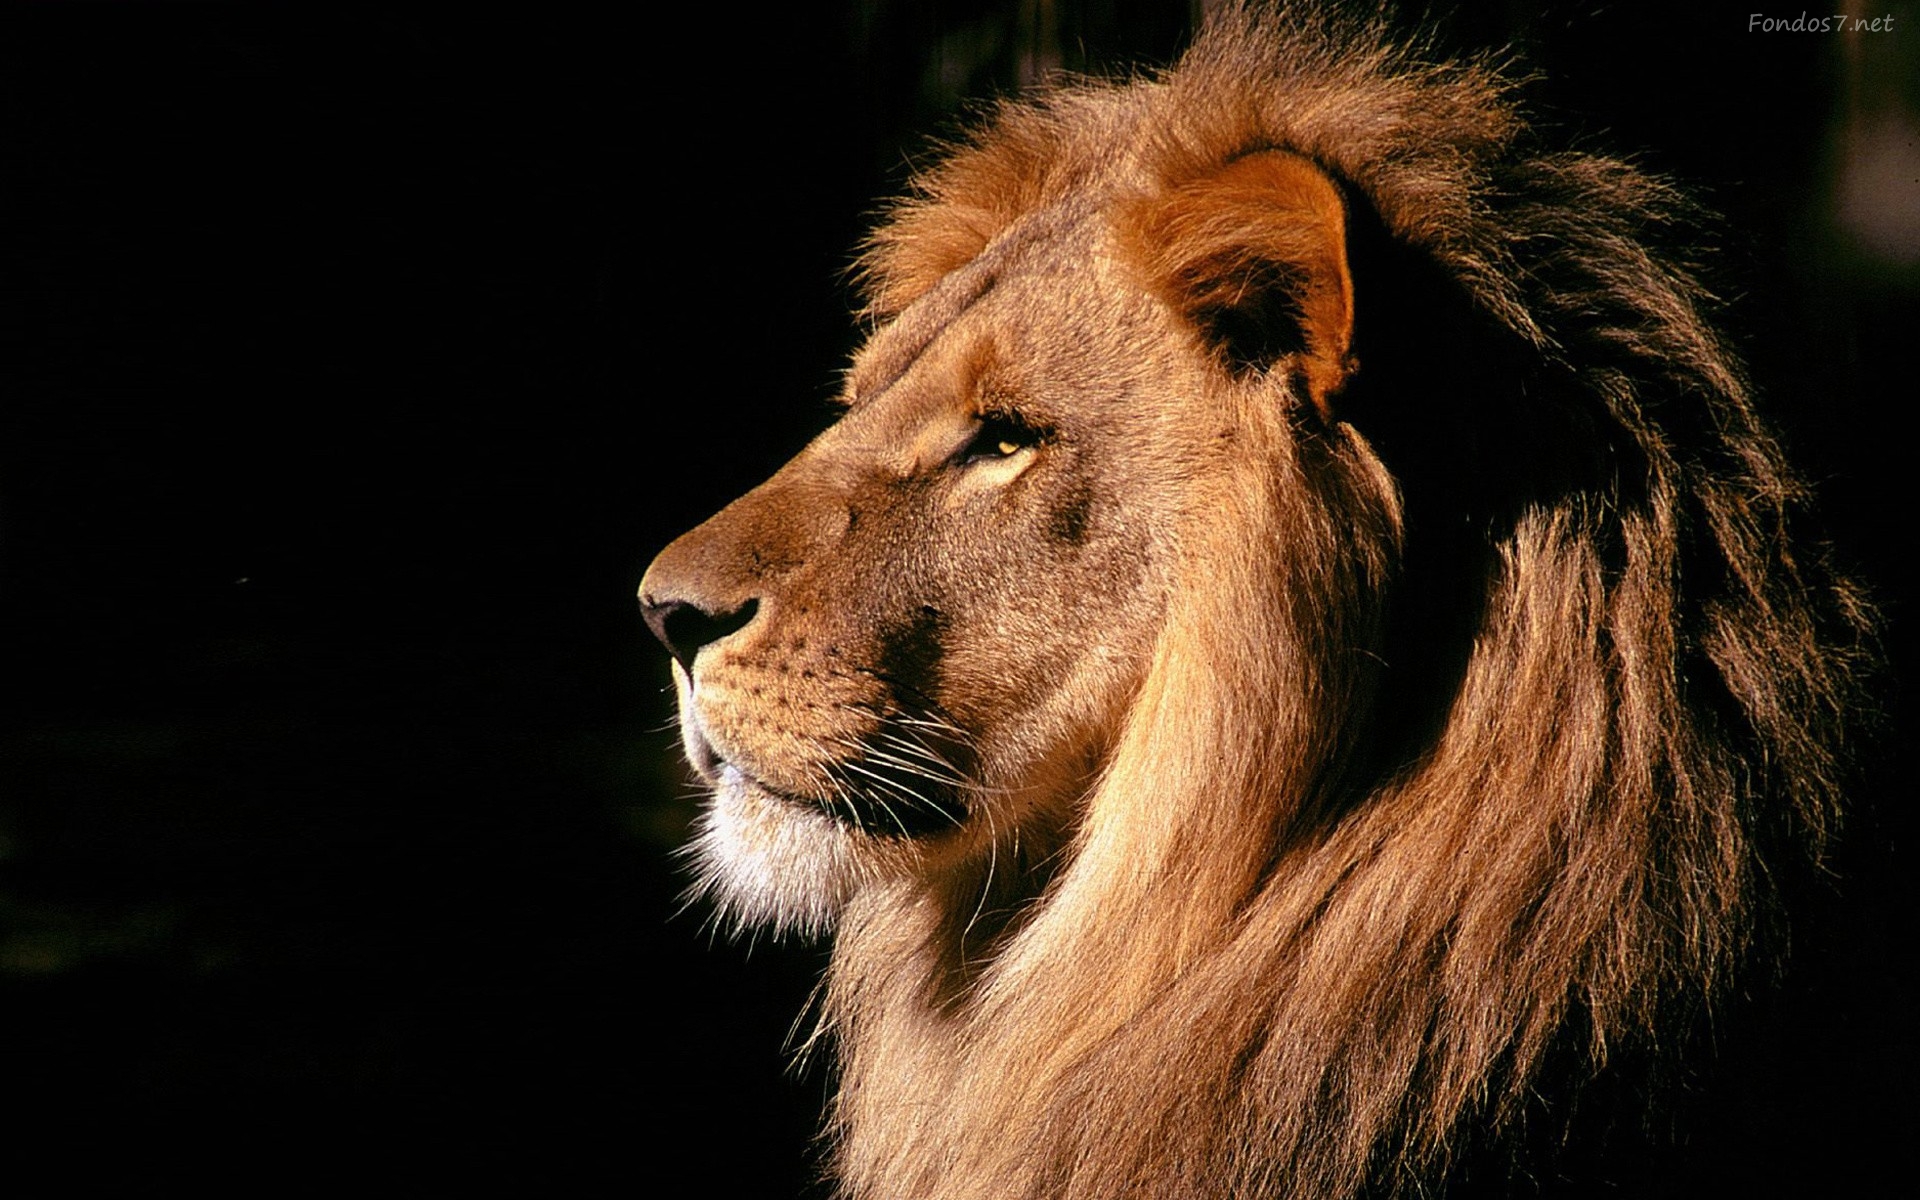 fondos fond d'écran hd,lion,faune,cheveux,animal terrestre,lion masai